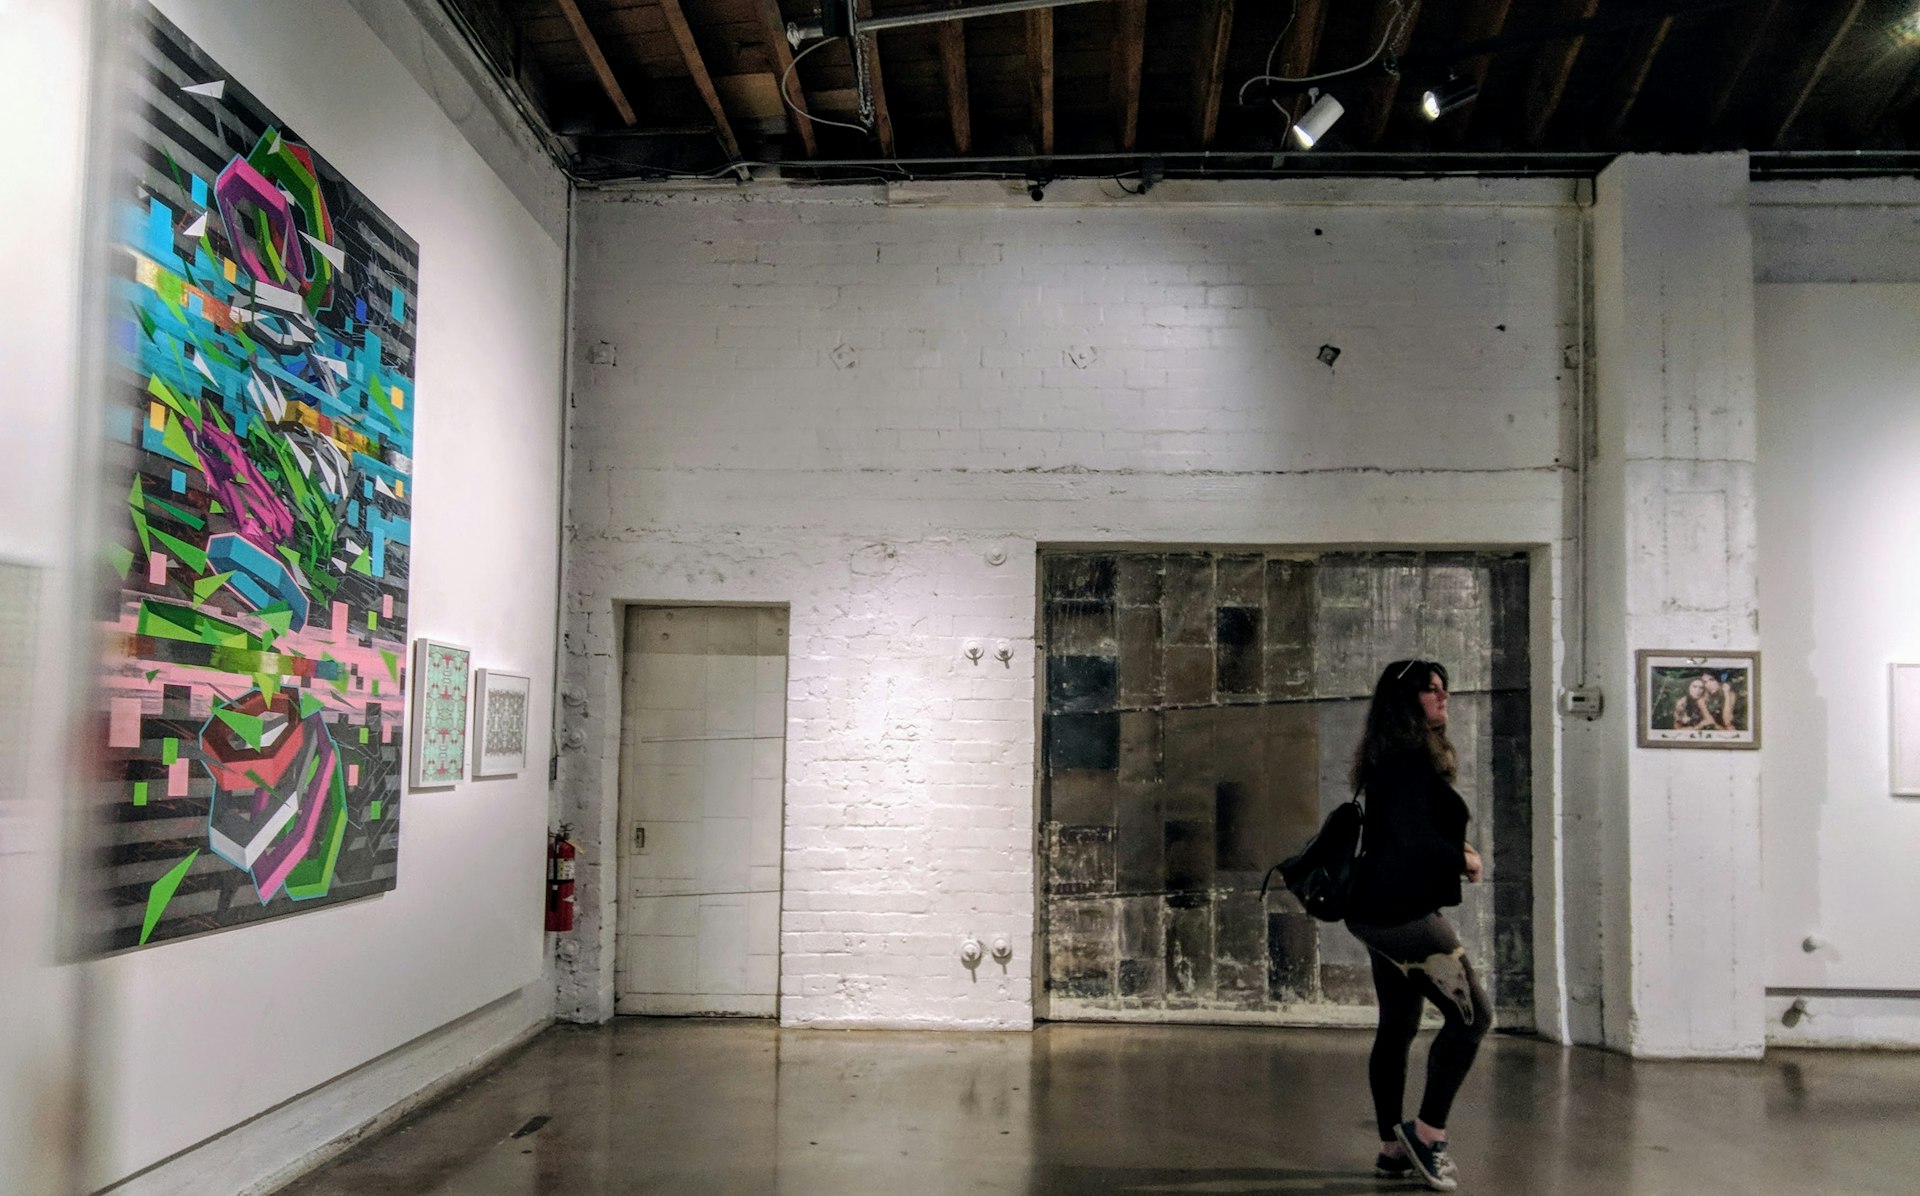 A woman walks through an art gallery